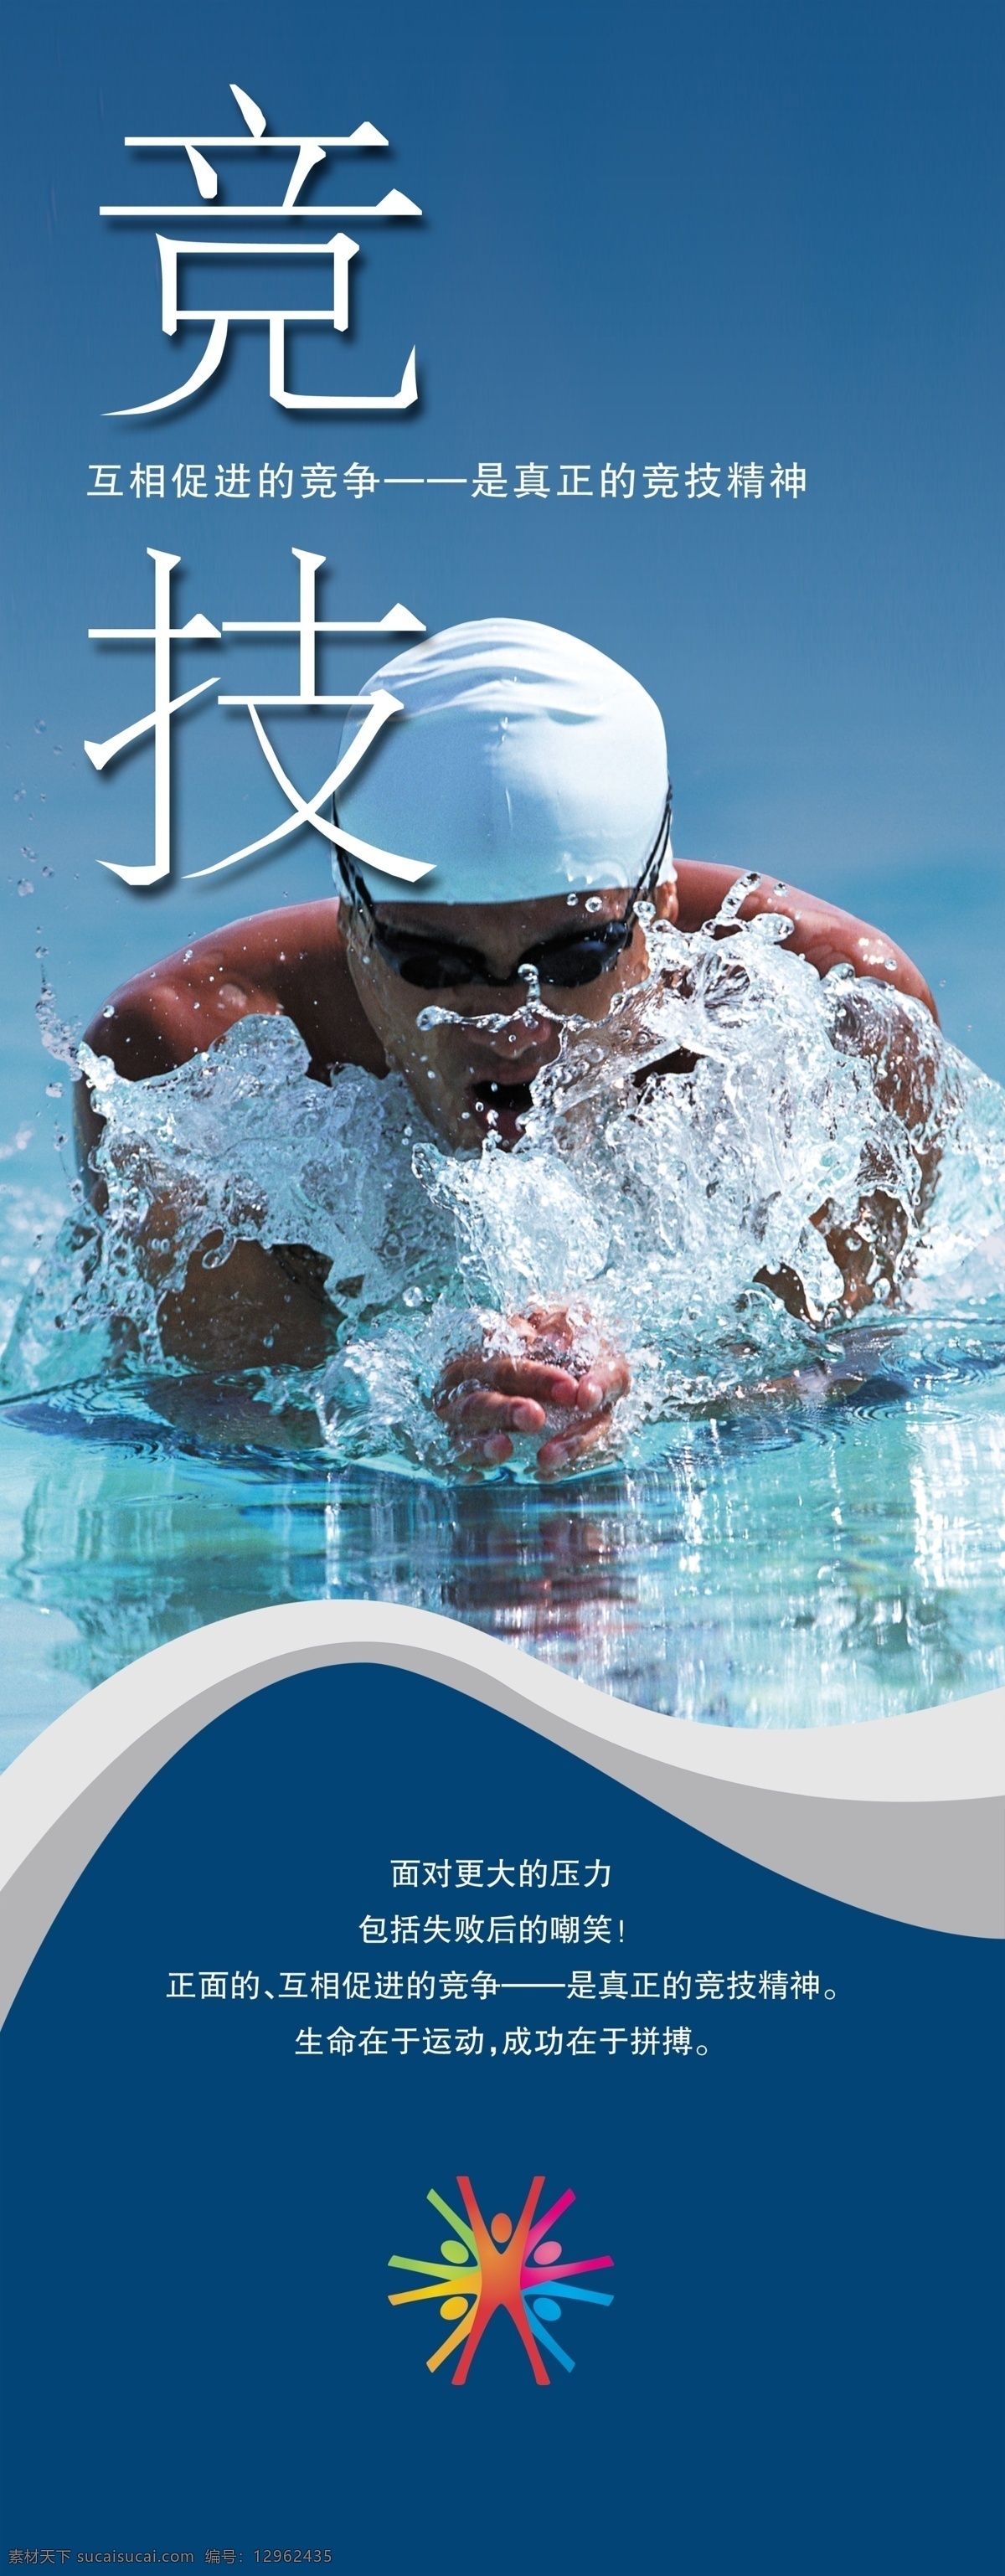 体育免费下载 体育 游泳 运动 运动会海报 运动会 运动会素材 运动会展板 展板 运动素材 其他海报设计